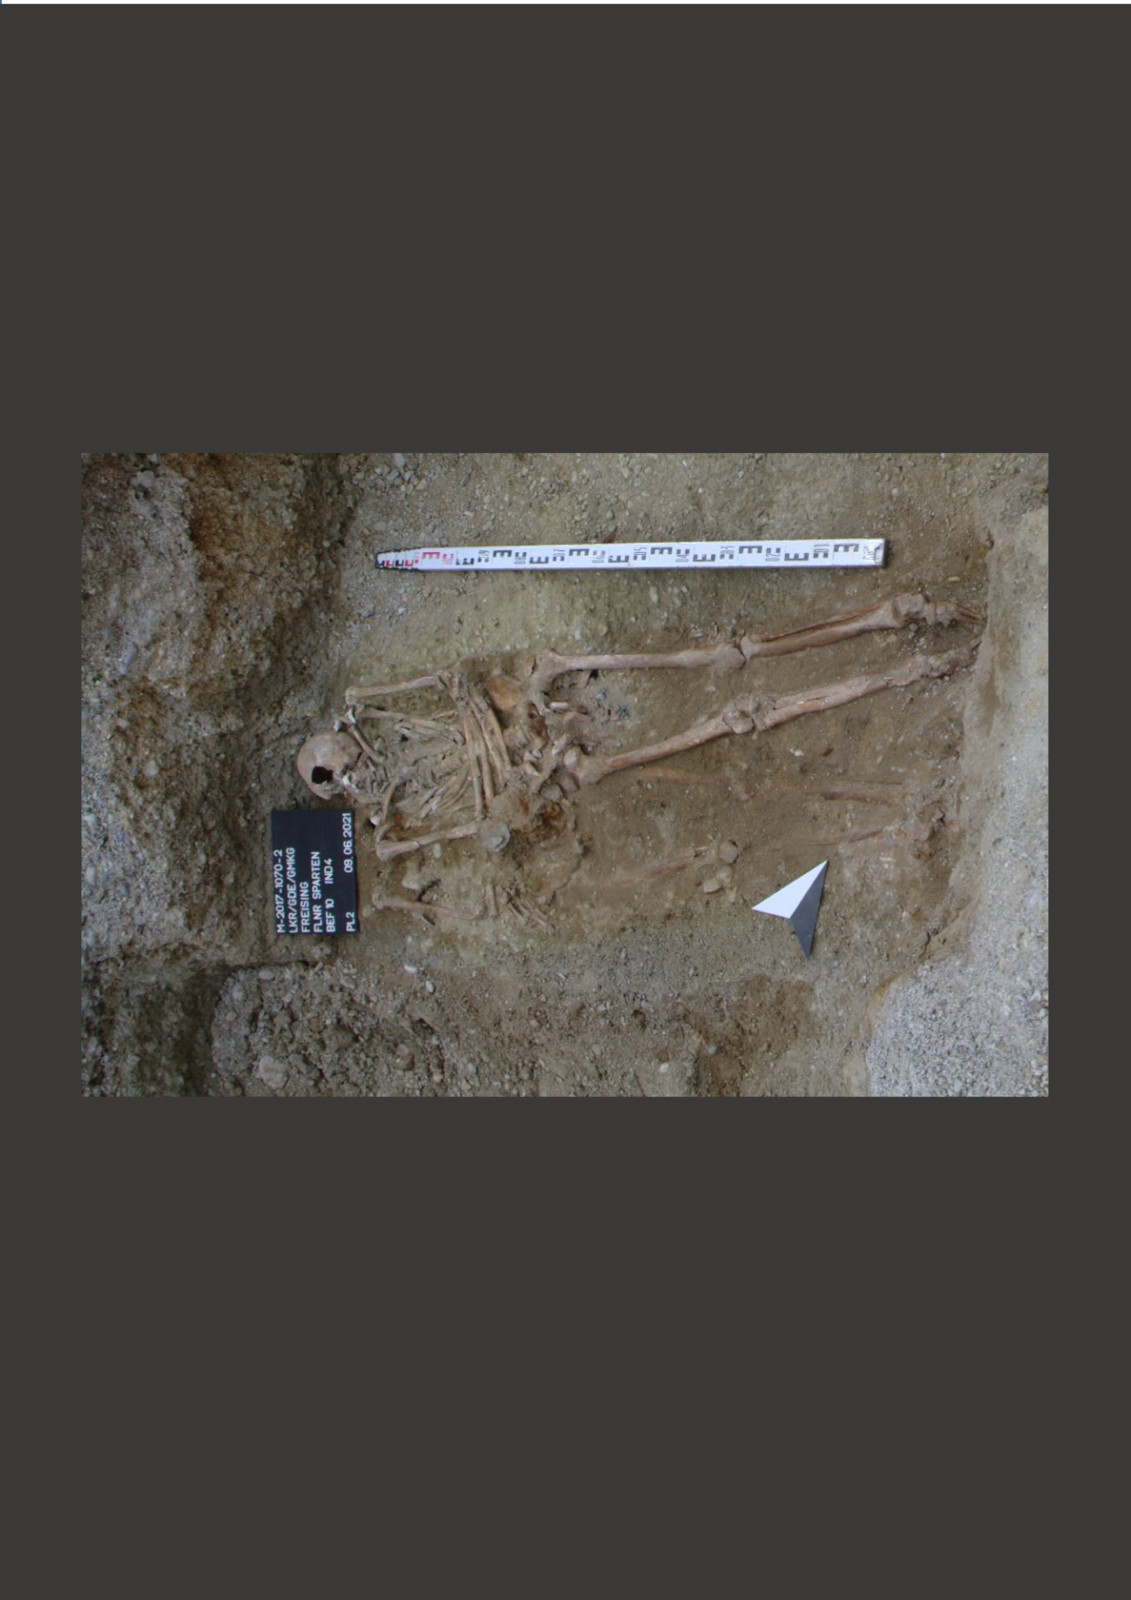 Das freigelegte Skelett: an der linken Hand ist als Klumpen die Handprothese zu erkennen